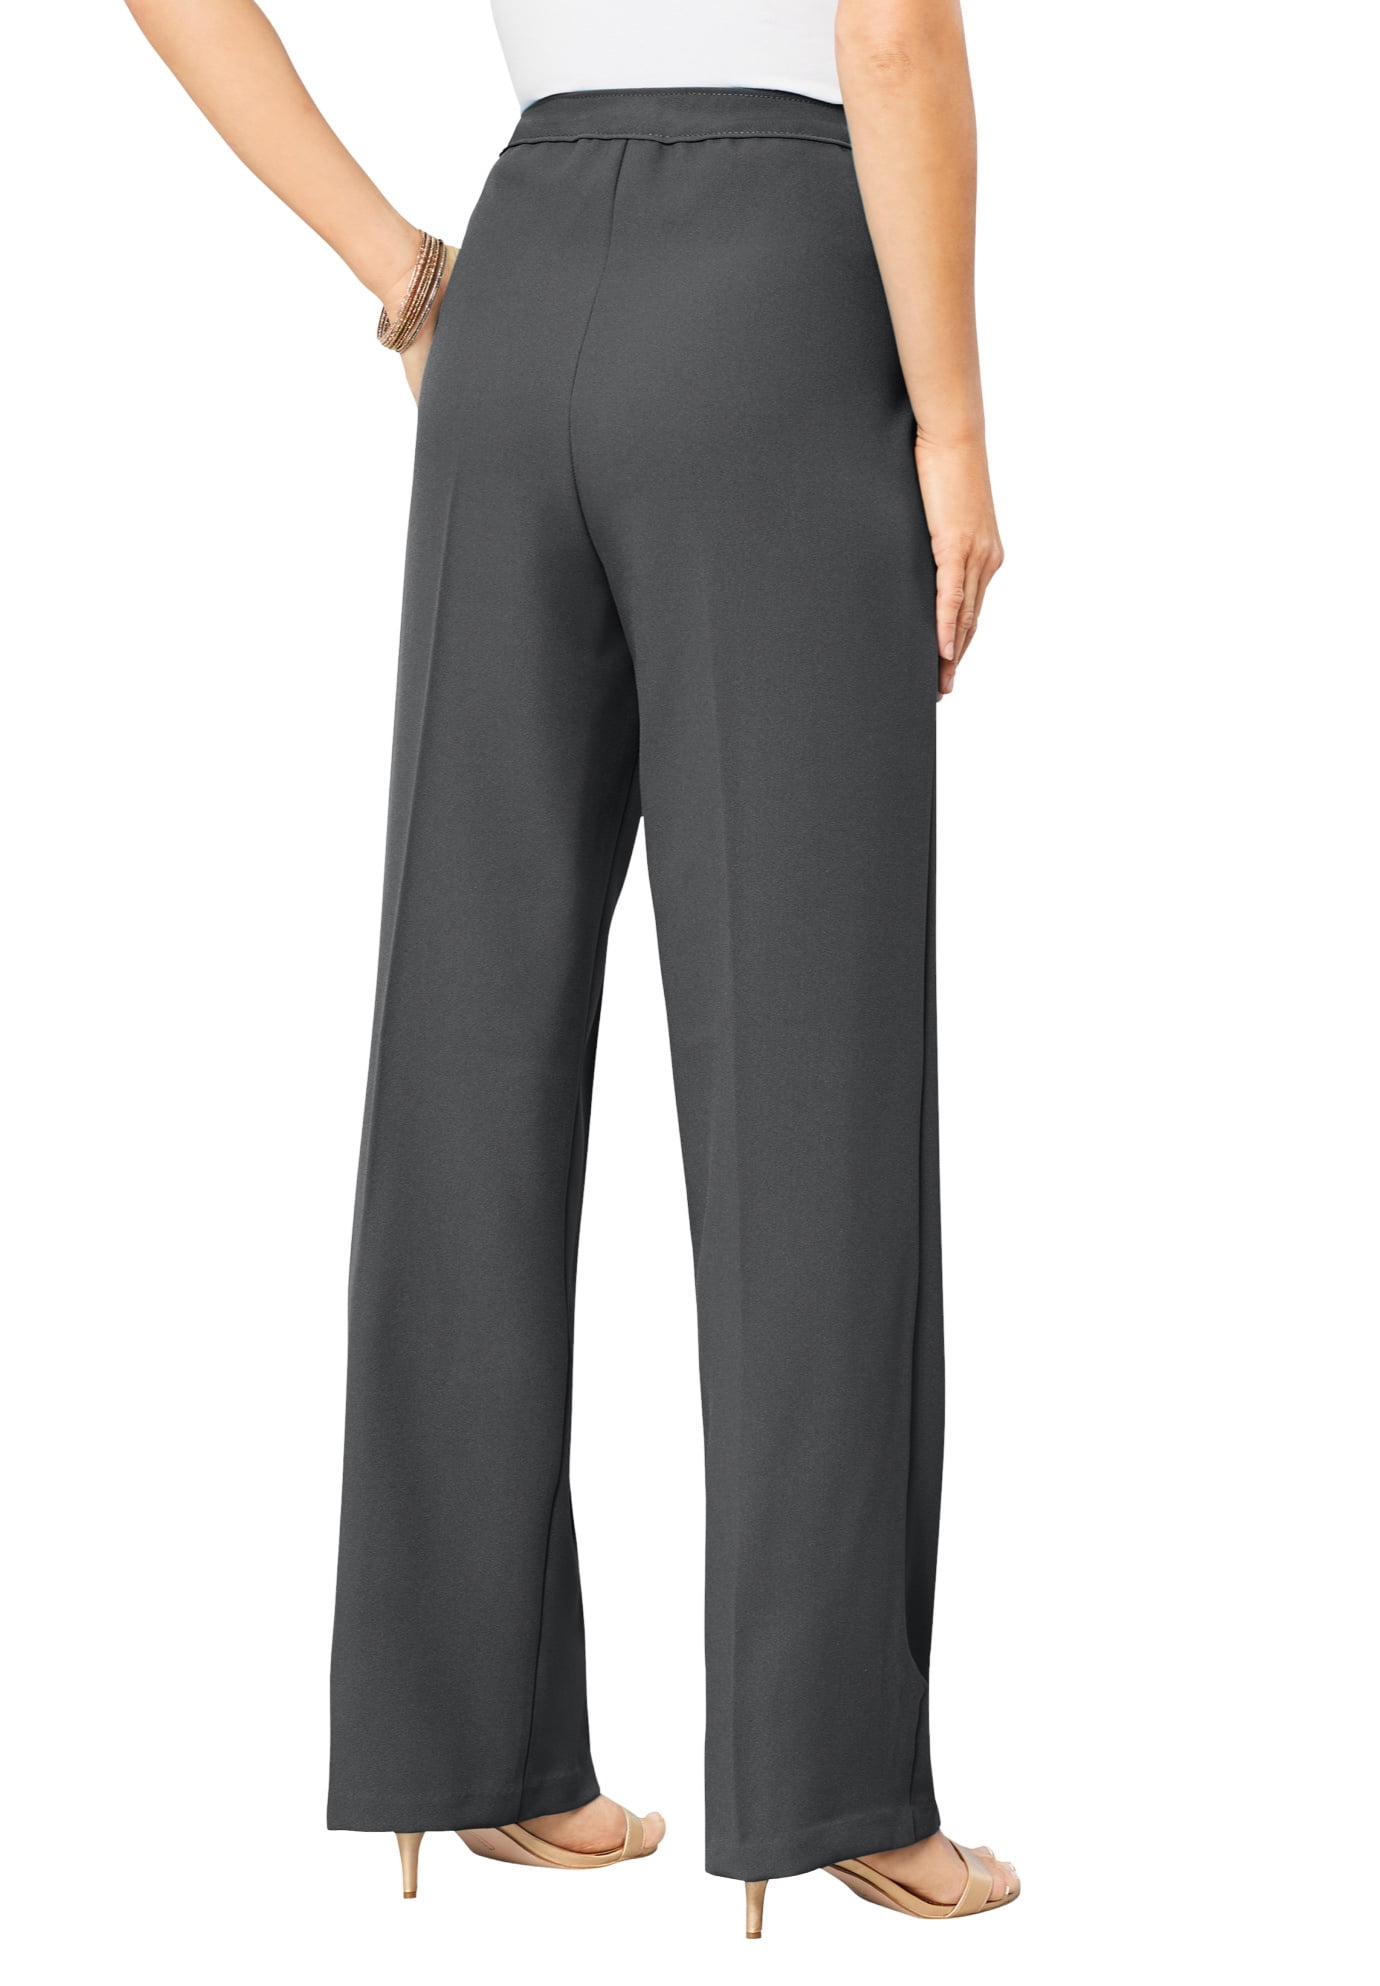 Roaman's Women's Plus Size Wide-Leg Bend Over Pant Pant - Walmart.com